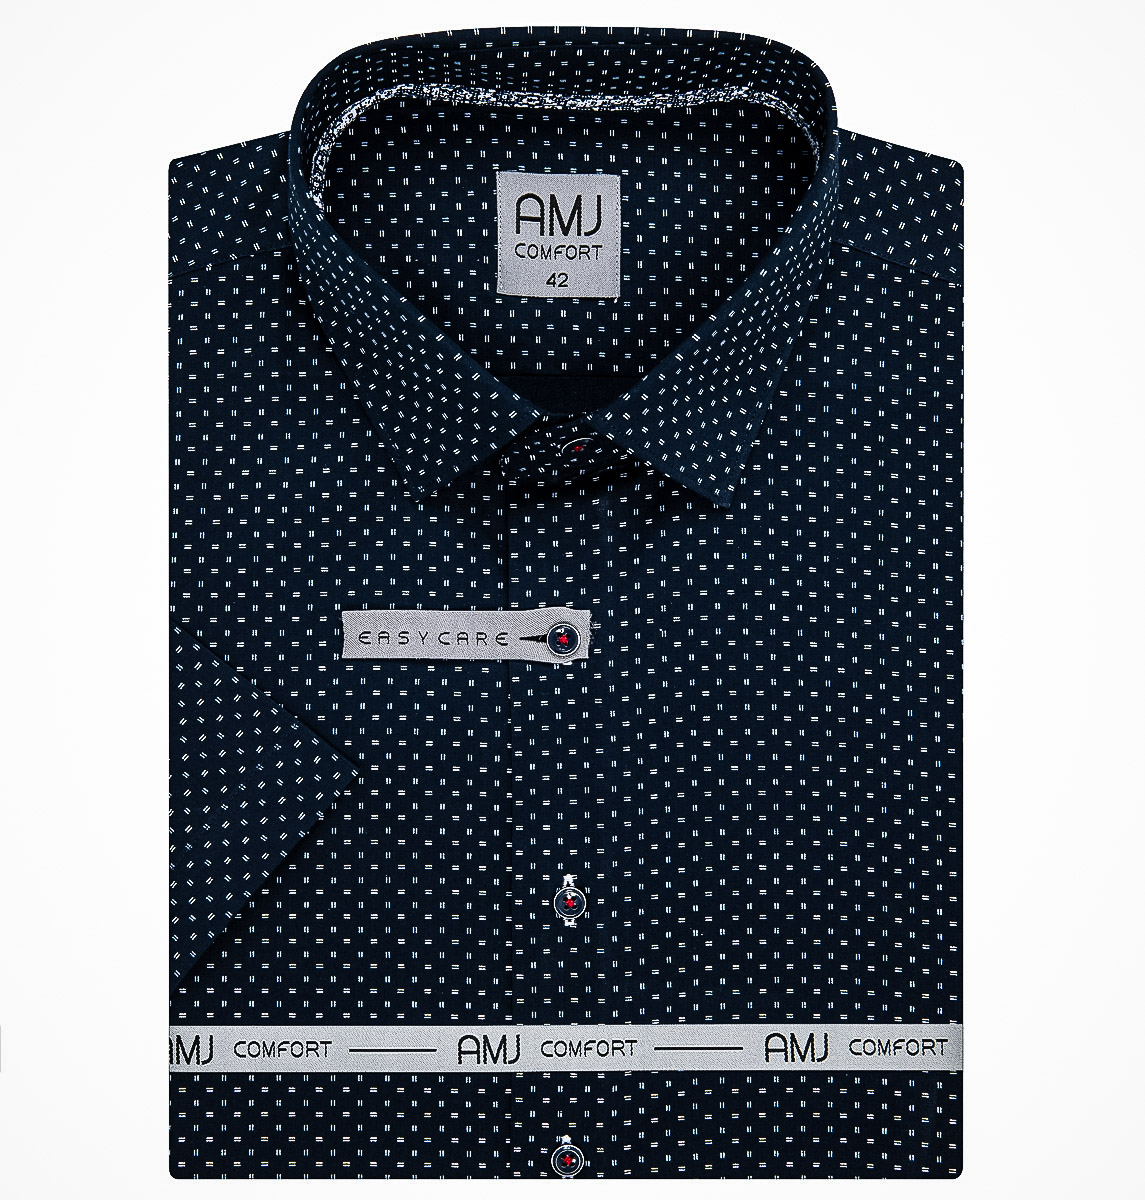 Pánská košile AMJ bavlněná, tmavě modrá s dvojitými bílými čárkami VKBR1192, krátký rukáv, regular fit